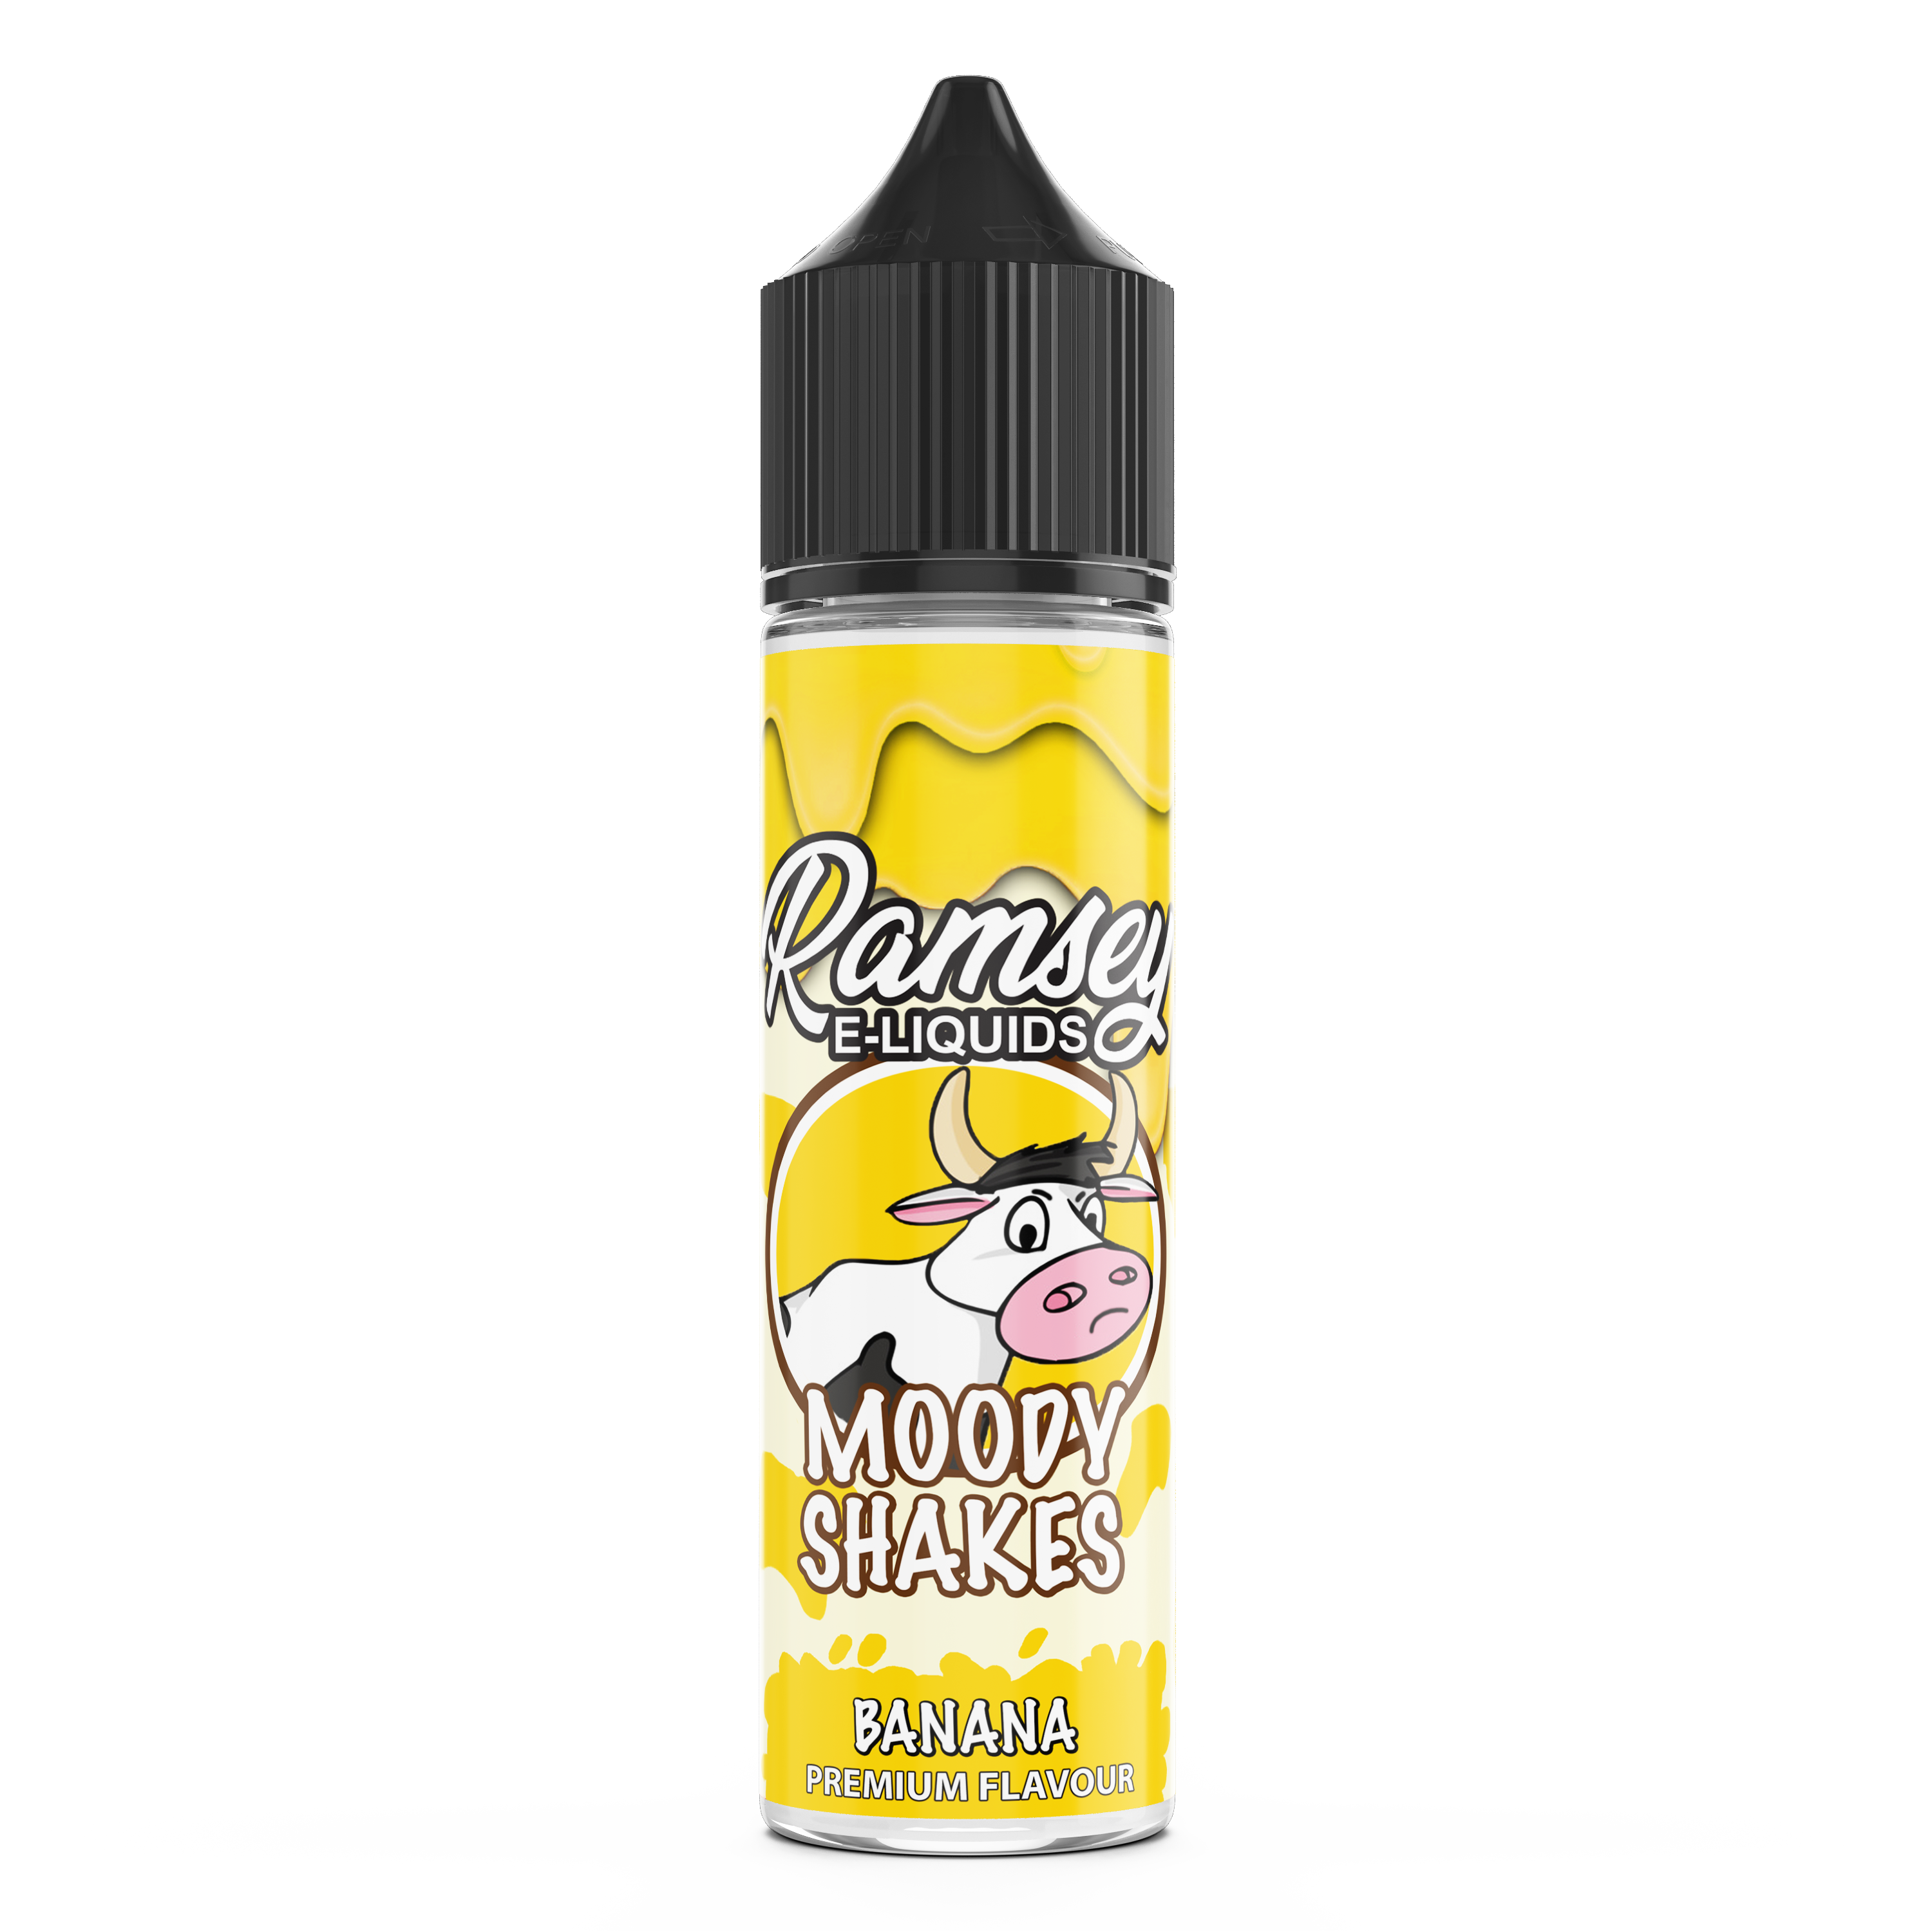 Ramsey E-liquids Moody Shakes Banana 50ml Shortfill 0mg